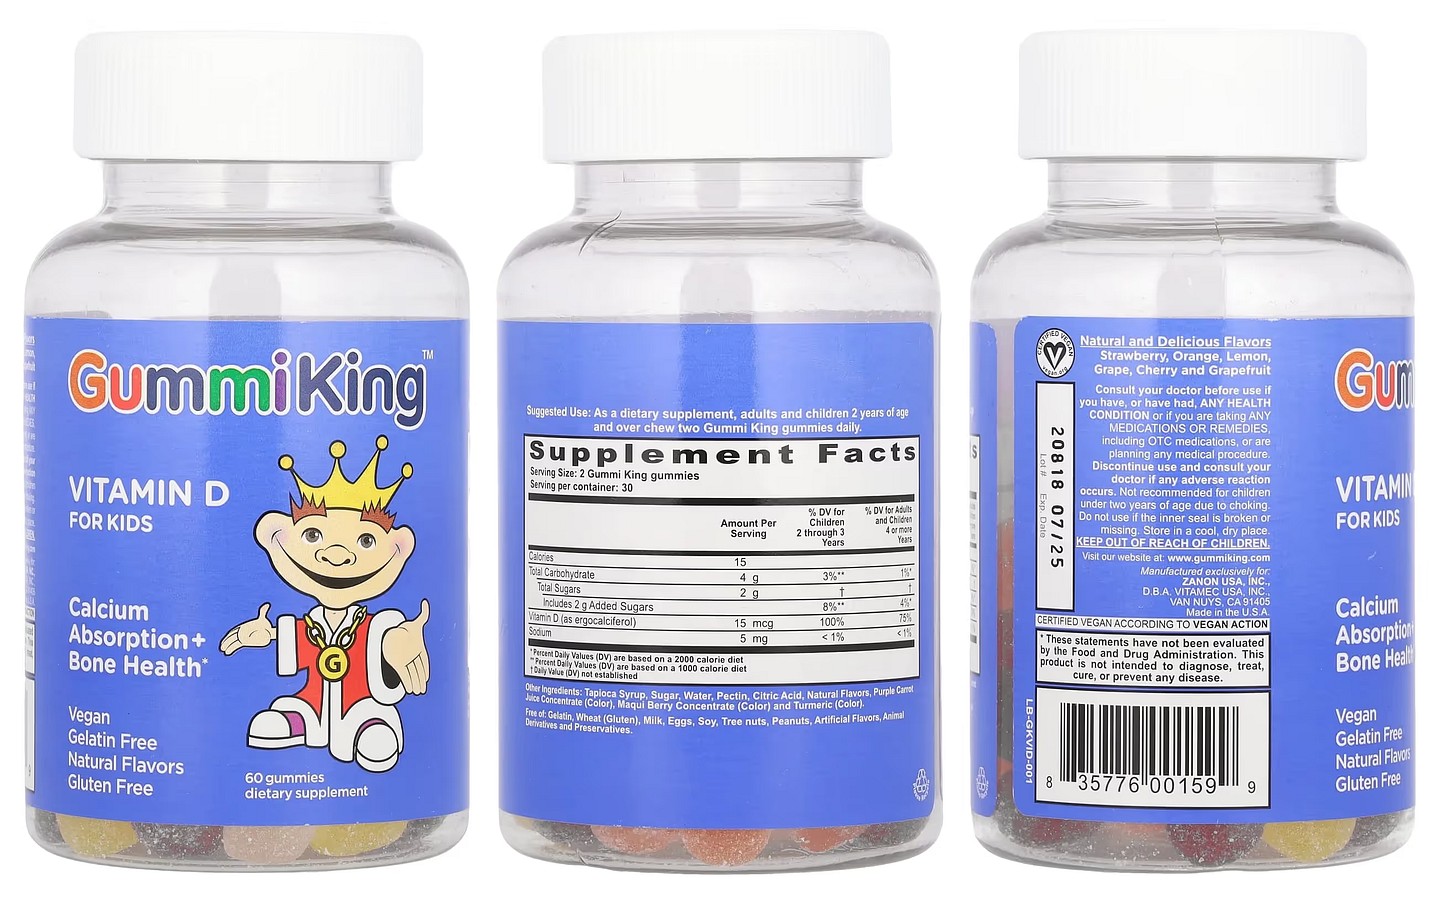 GummiKing, Vitamin D for Kids packaging